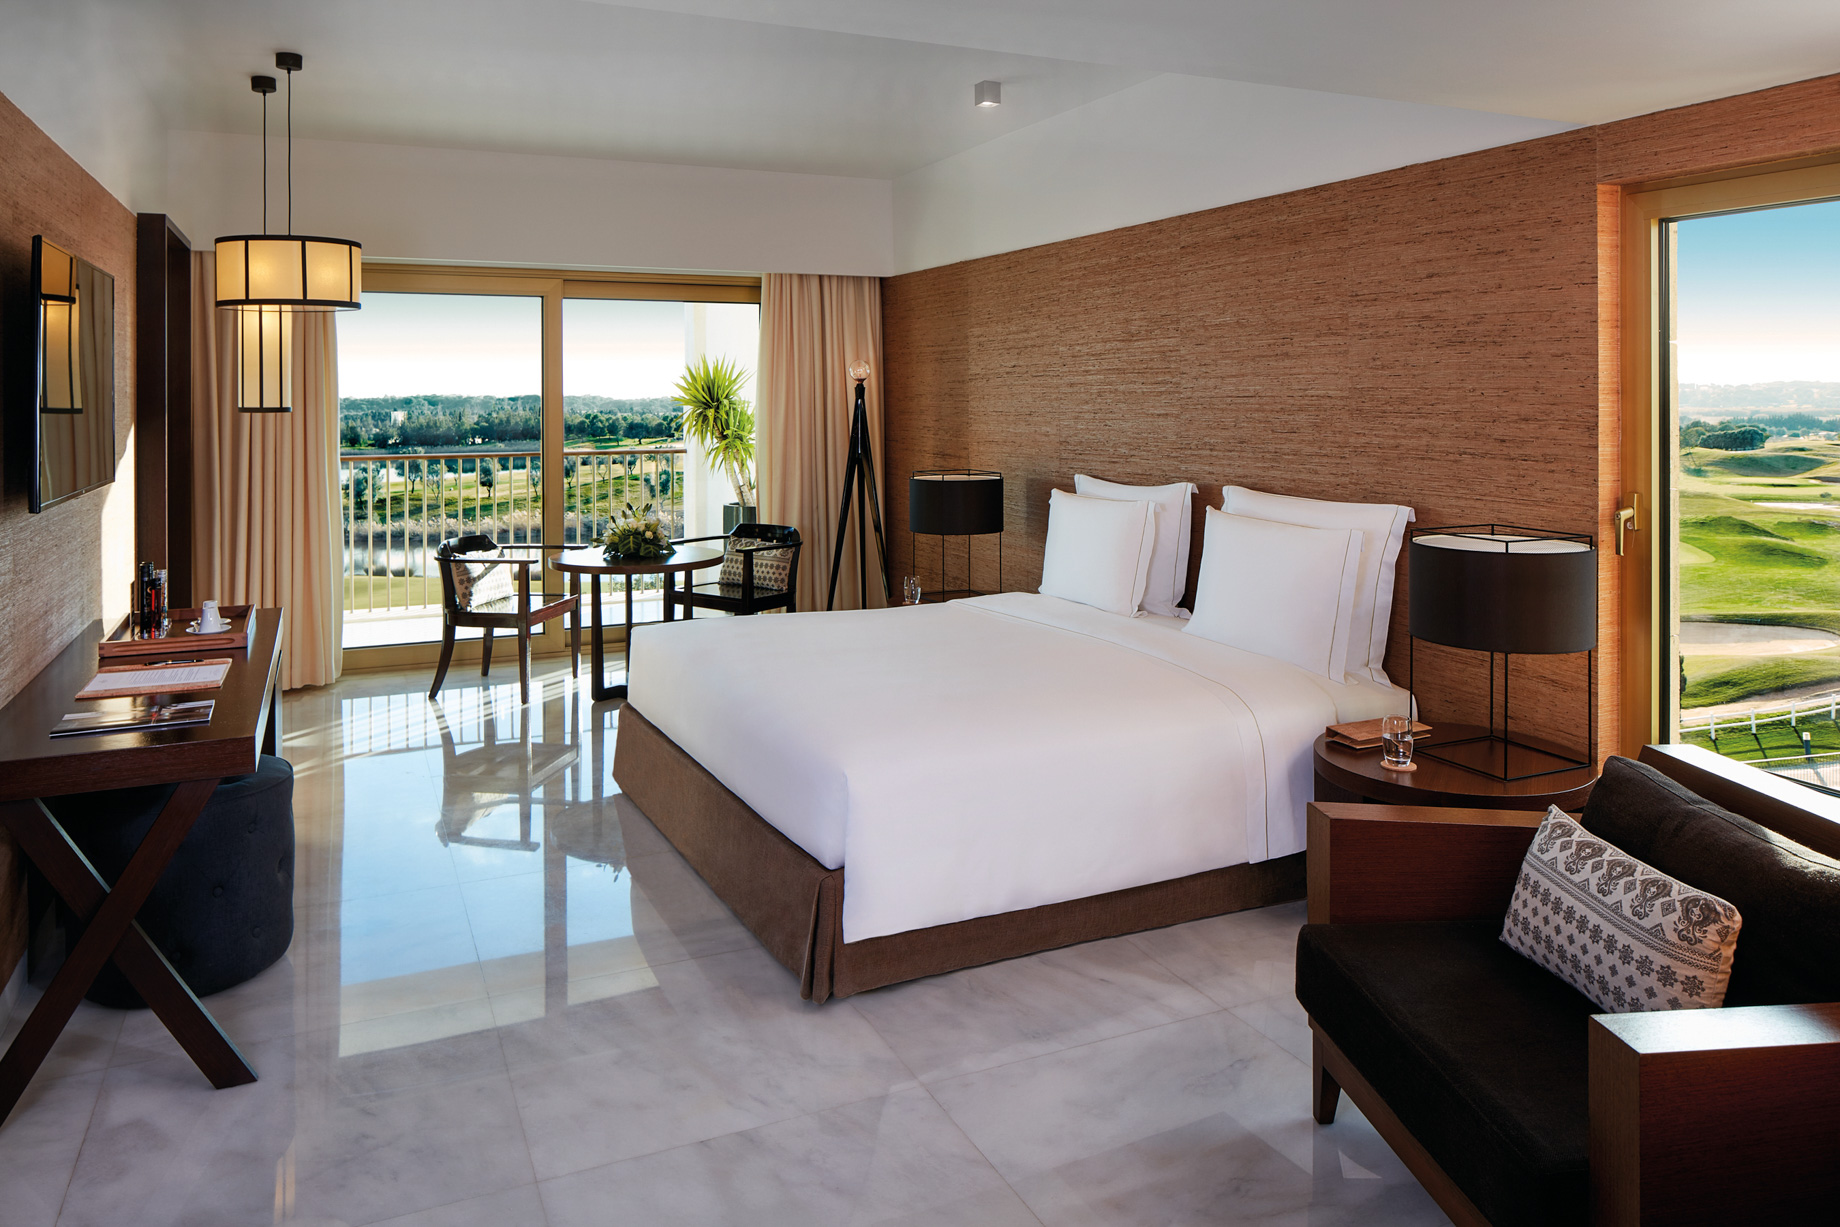 Anantara Vilamoura Algarve Resort - Portugal - Presidential Suite